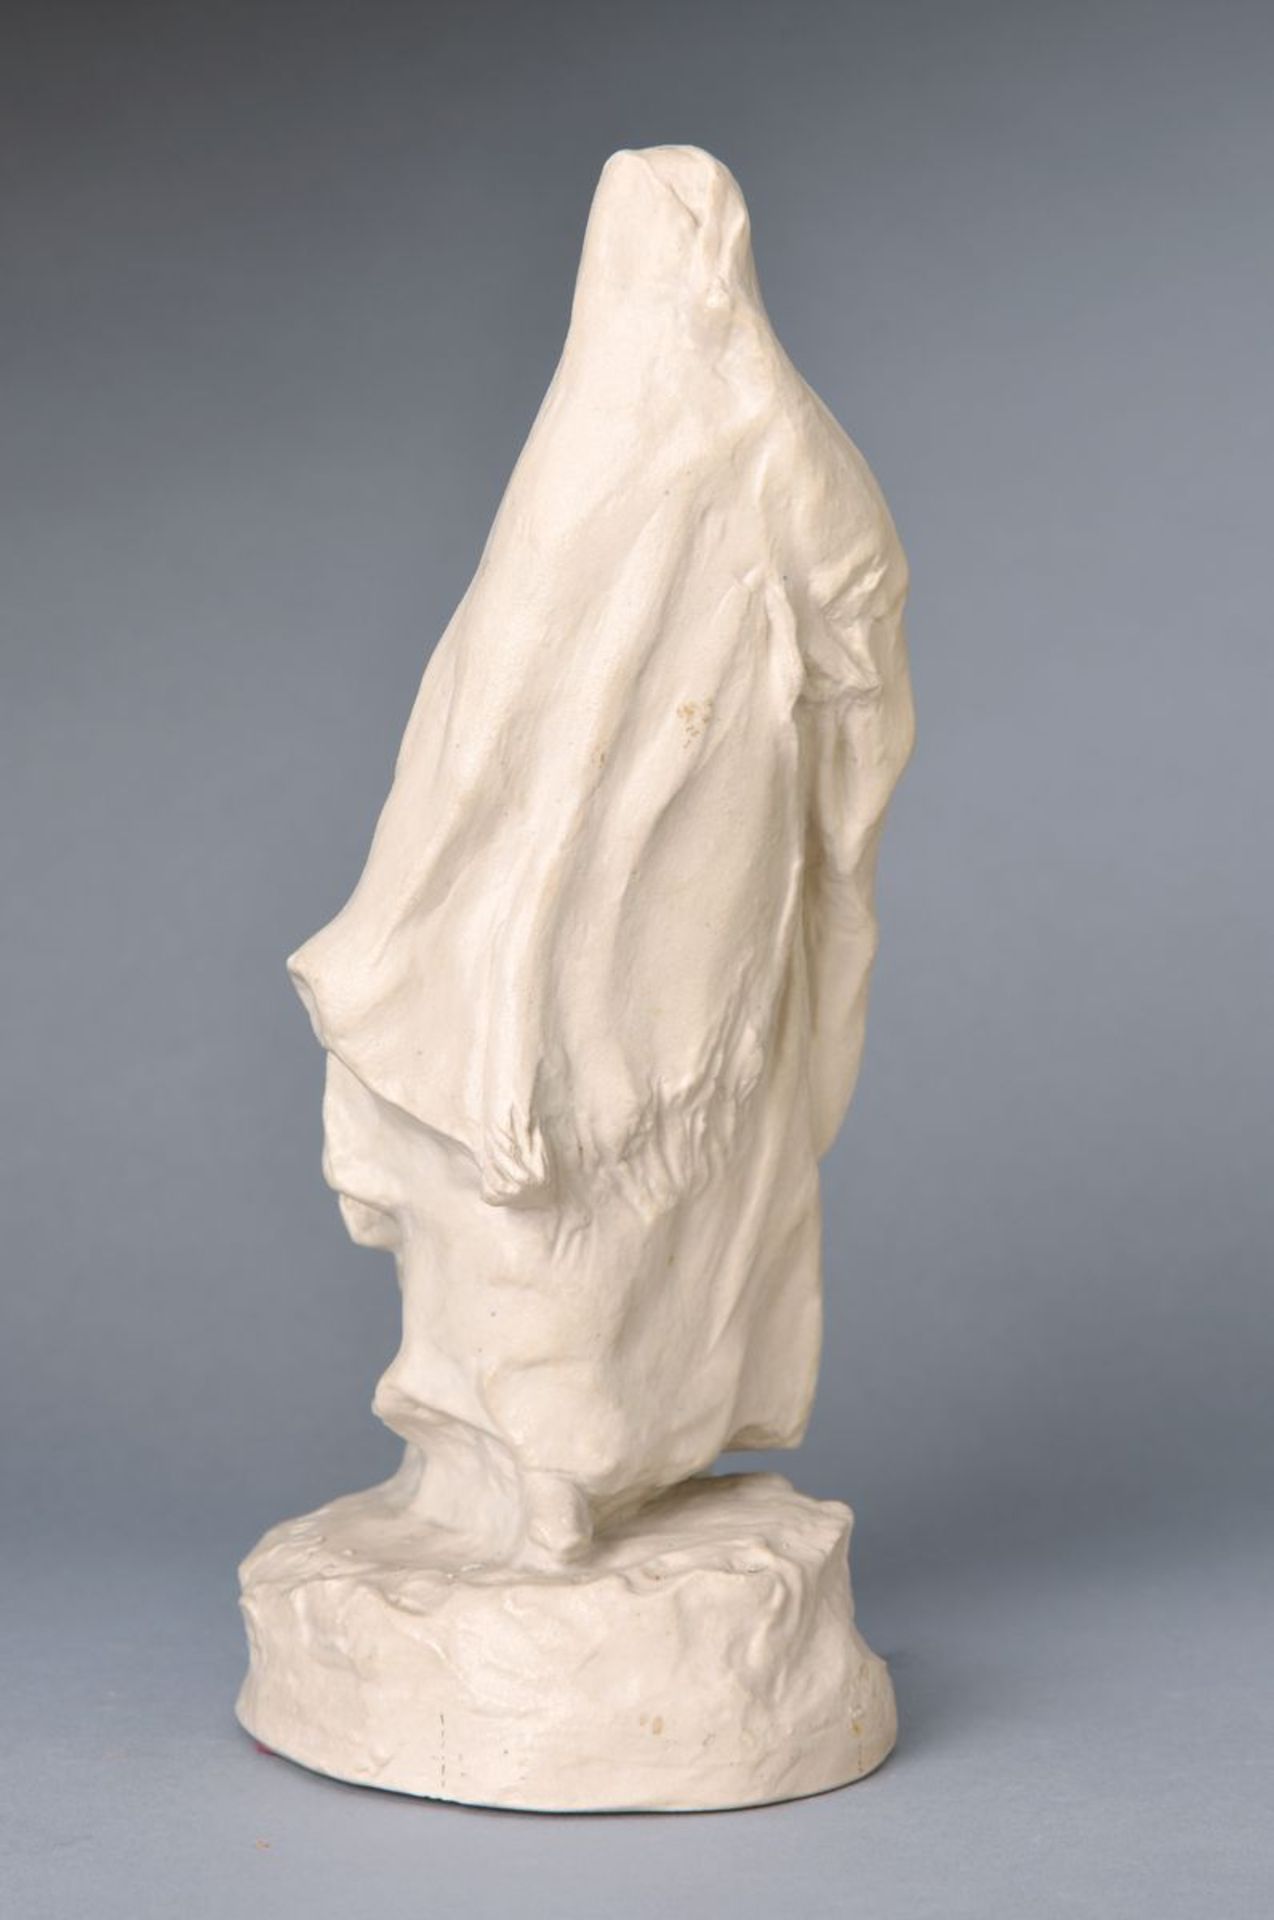 Seltene Skulptur, Entwurf M. Delorrme, bekannter Skulpteur aus Paris, um 1925, ausgeführt von Mougin